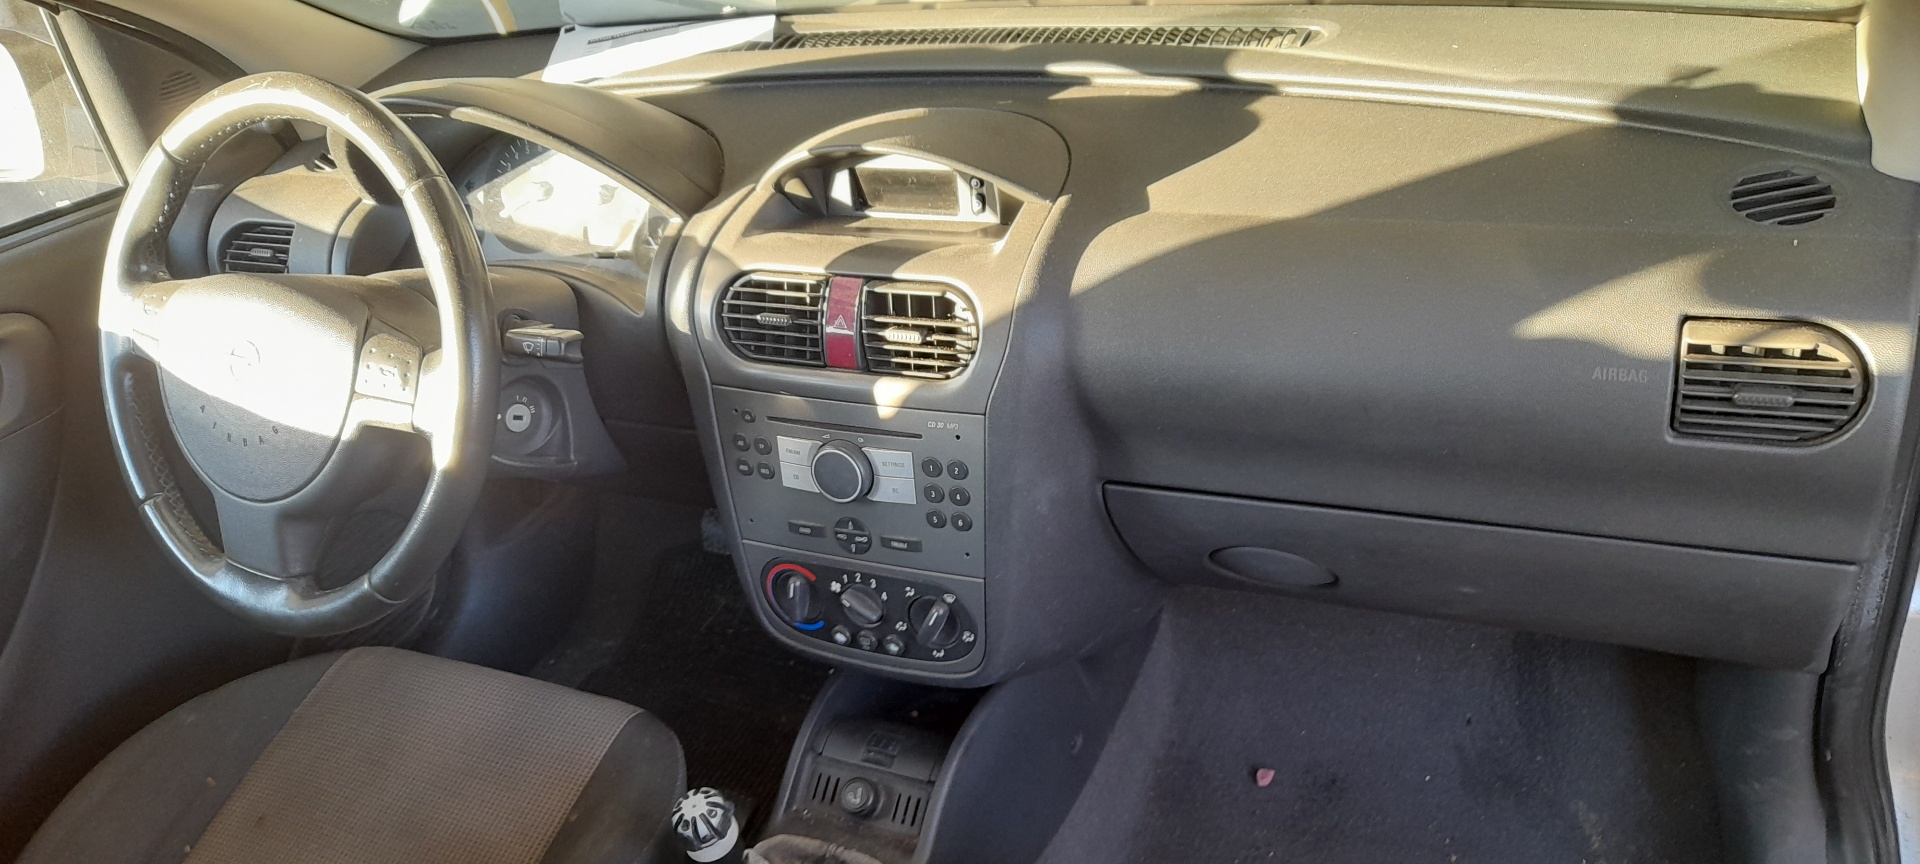 FIAT Corsa C (2000-2006) Front Left Door Window Switch 24409205 22309642